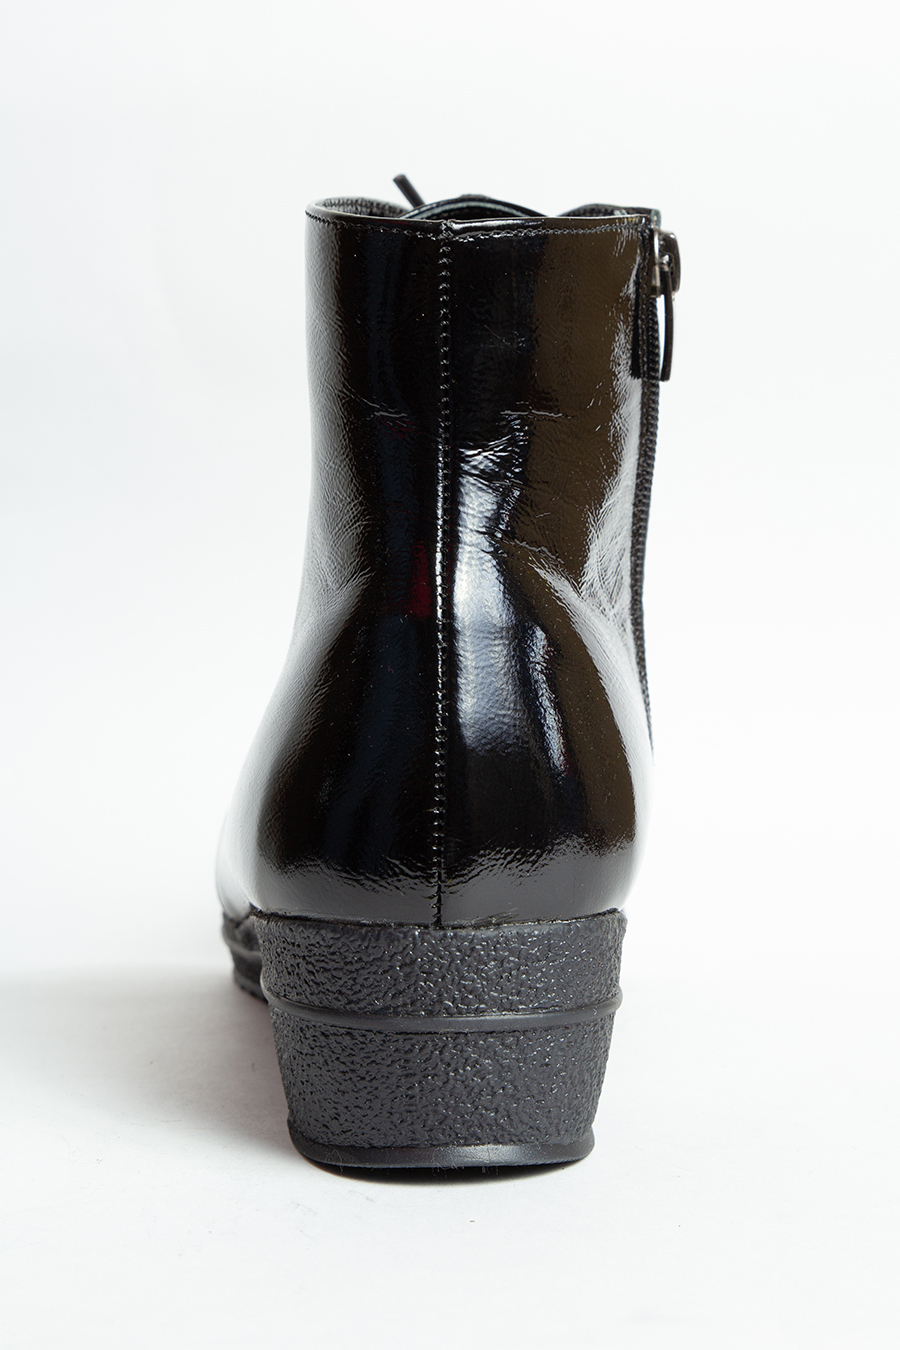 Ботинки черные на искусственном меху большого размера